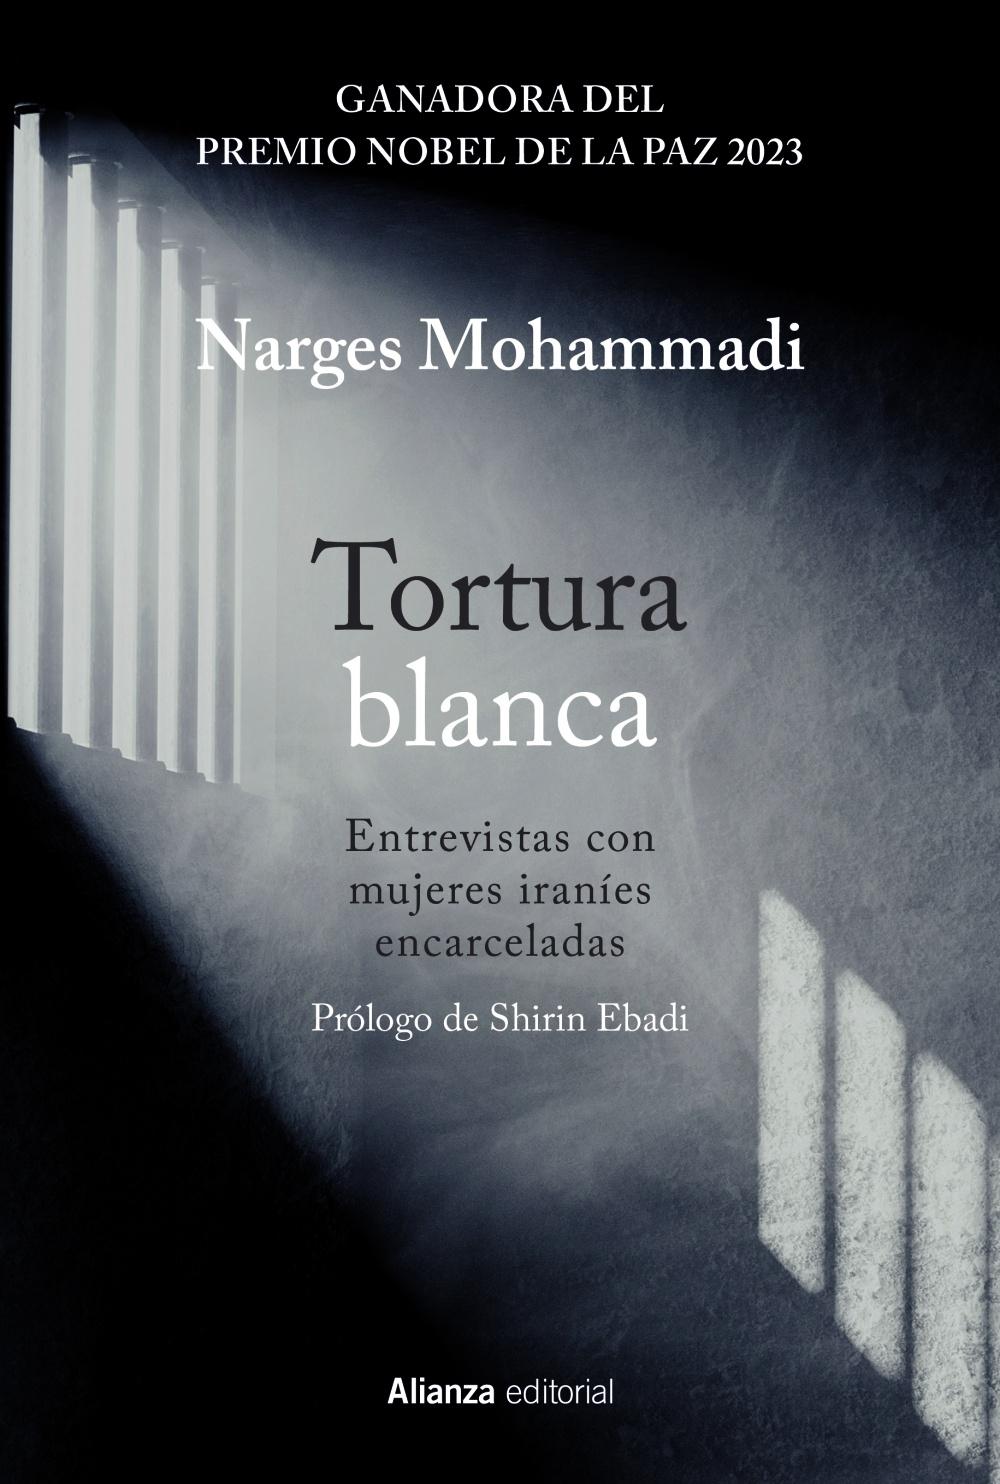 TORTURA BLANCA "ENTREVISTAS CON MUJERES IRANIES ENCARCELADAS"